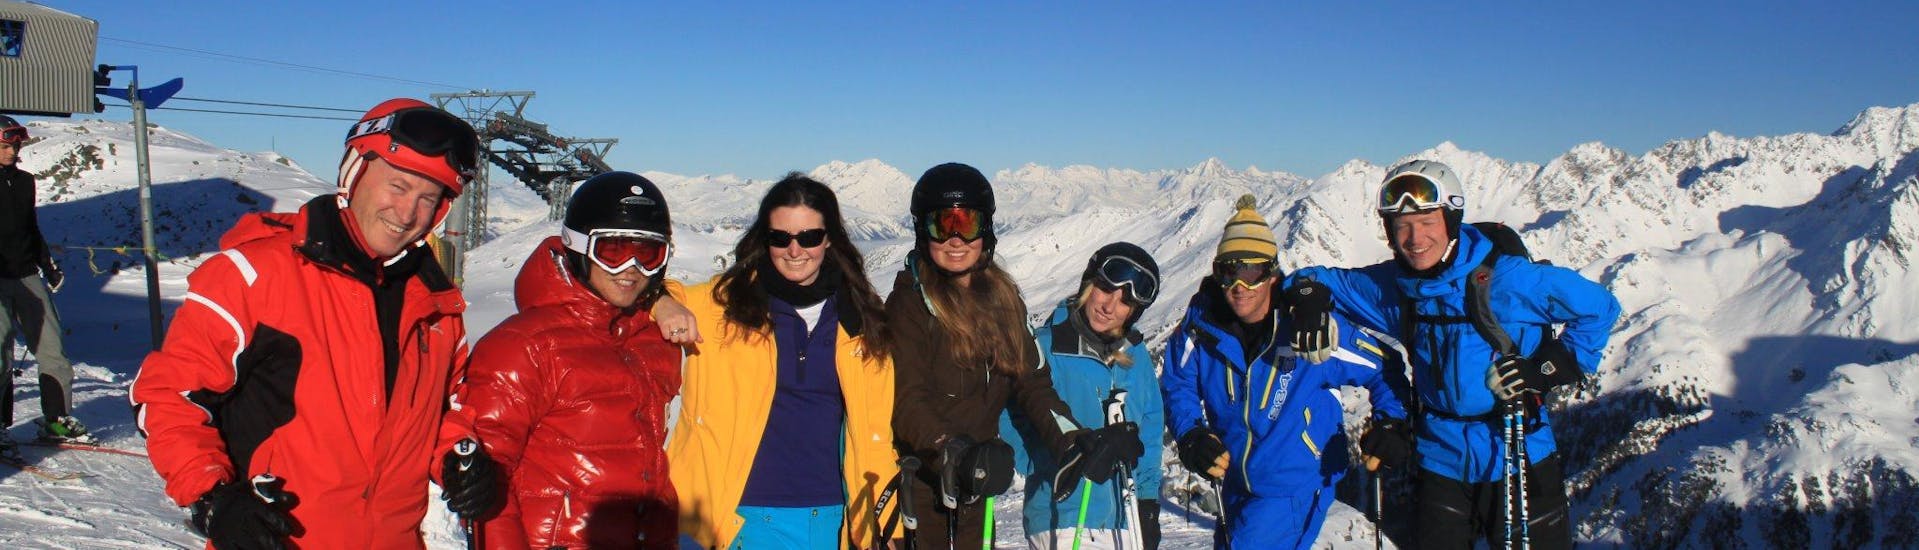 Skilessen voor volwassenen vanaf 16 jaar voor alle niveaus.